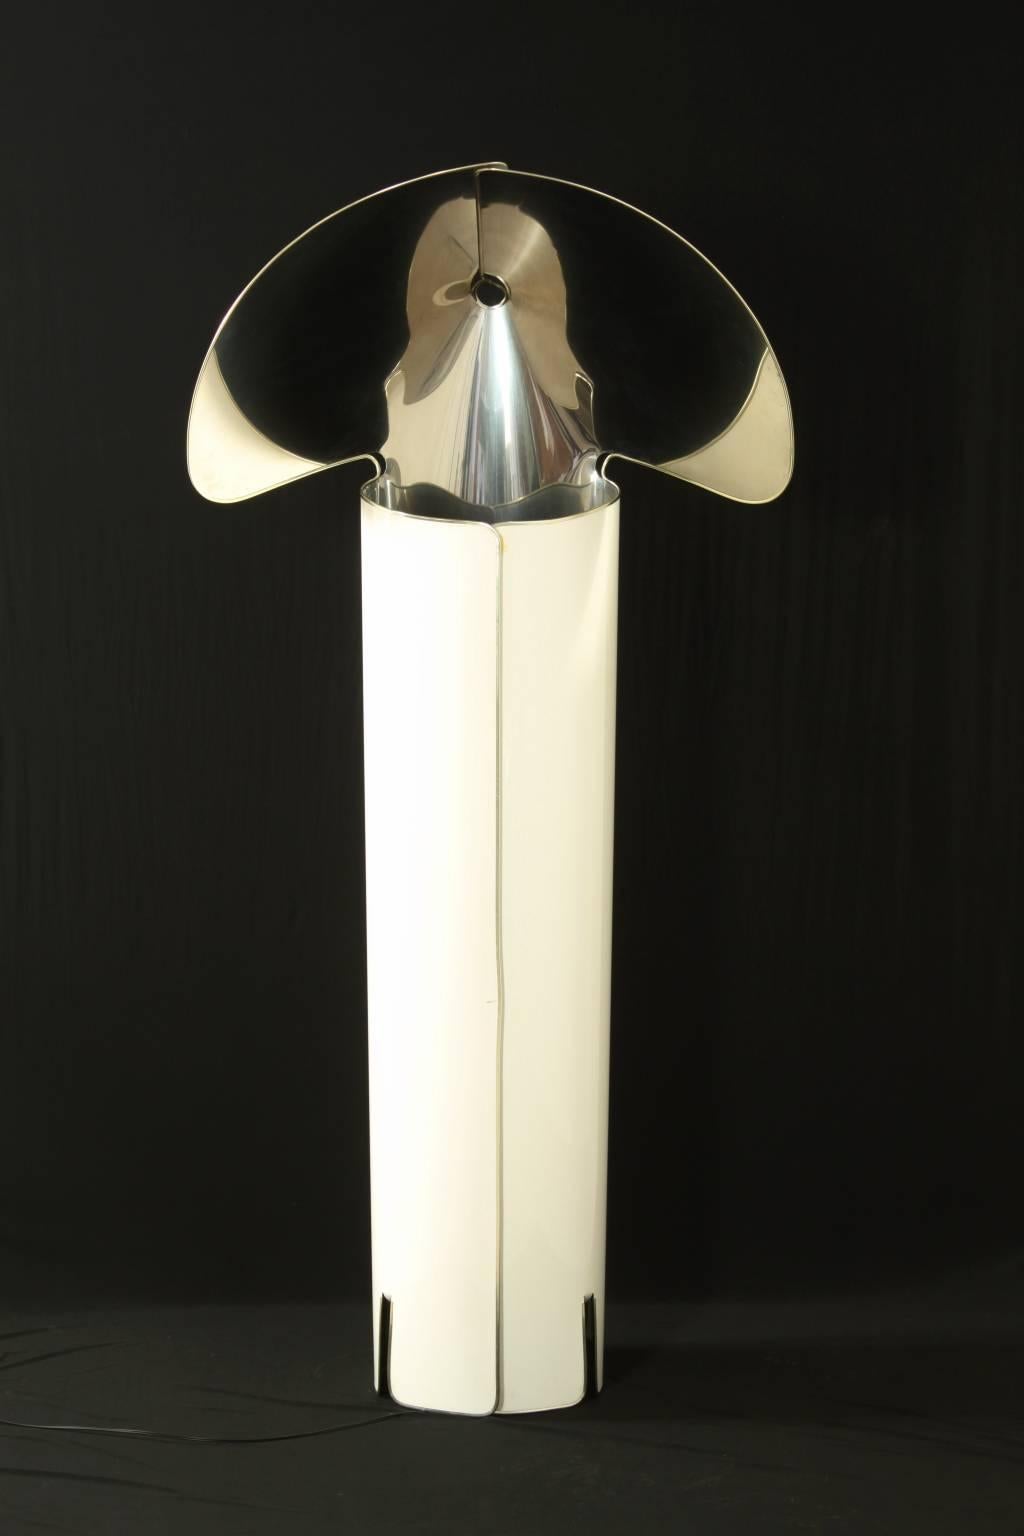 Mid-Century Modern Floor Lamp 'Chiara' by Mario Bellini Enamelled Steel 1960s Produced by Flos 